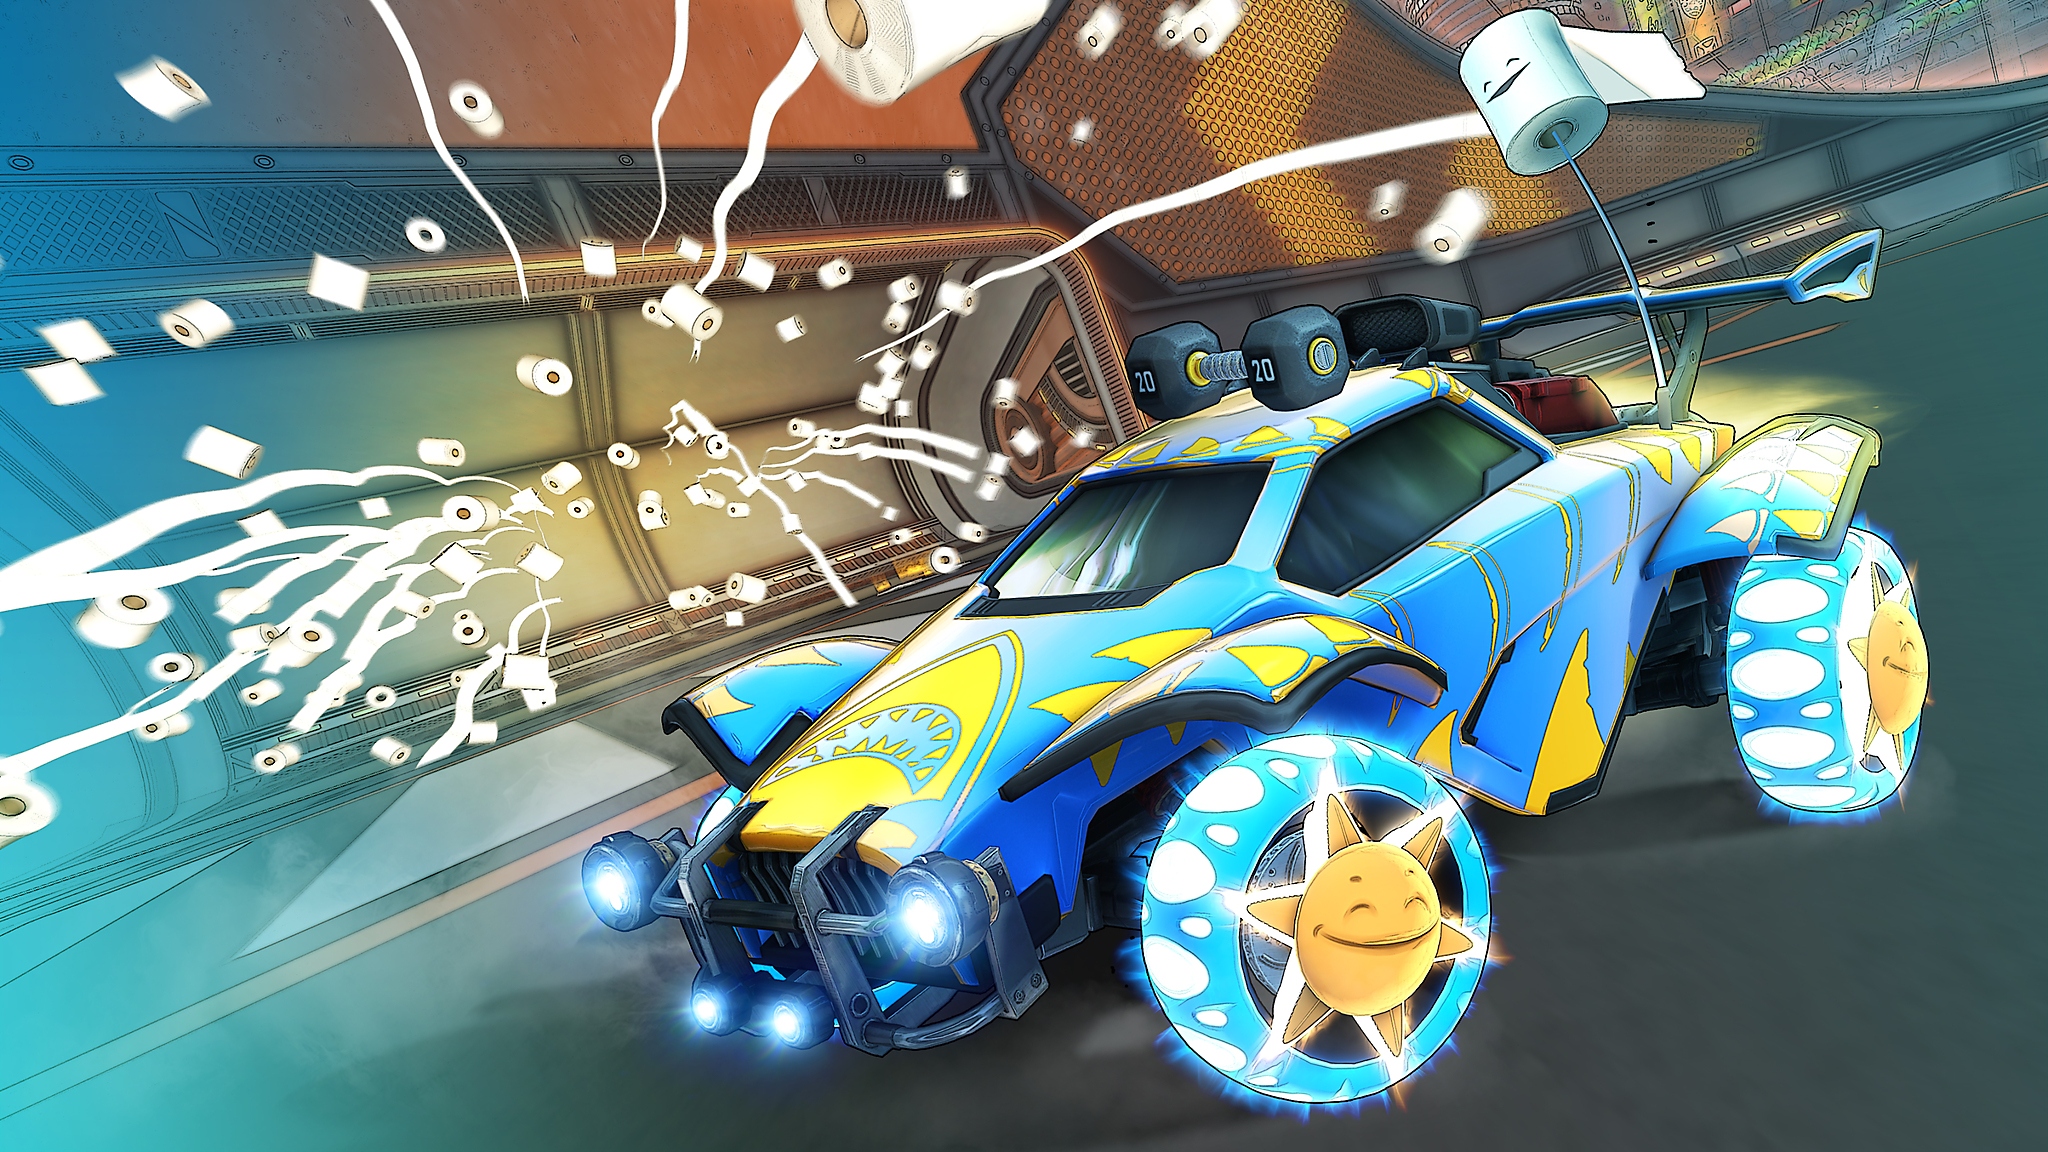 Rocket League - cptura de tela da Temporada 6 mostrando carro amarelo e azul com vários rolos de papel higiênico sendo arremessados no ar